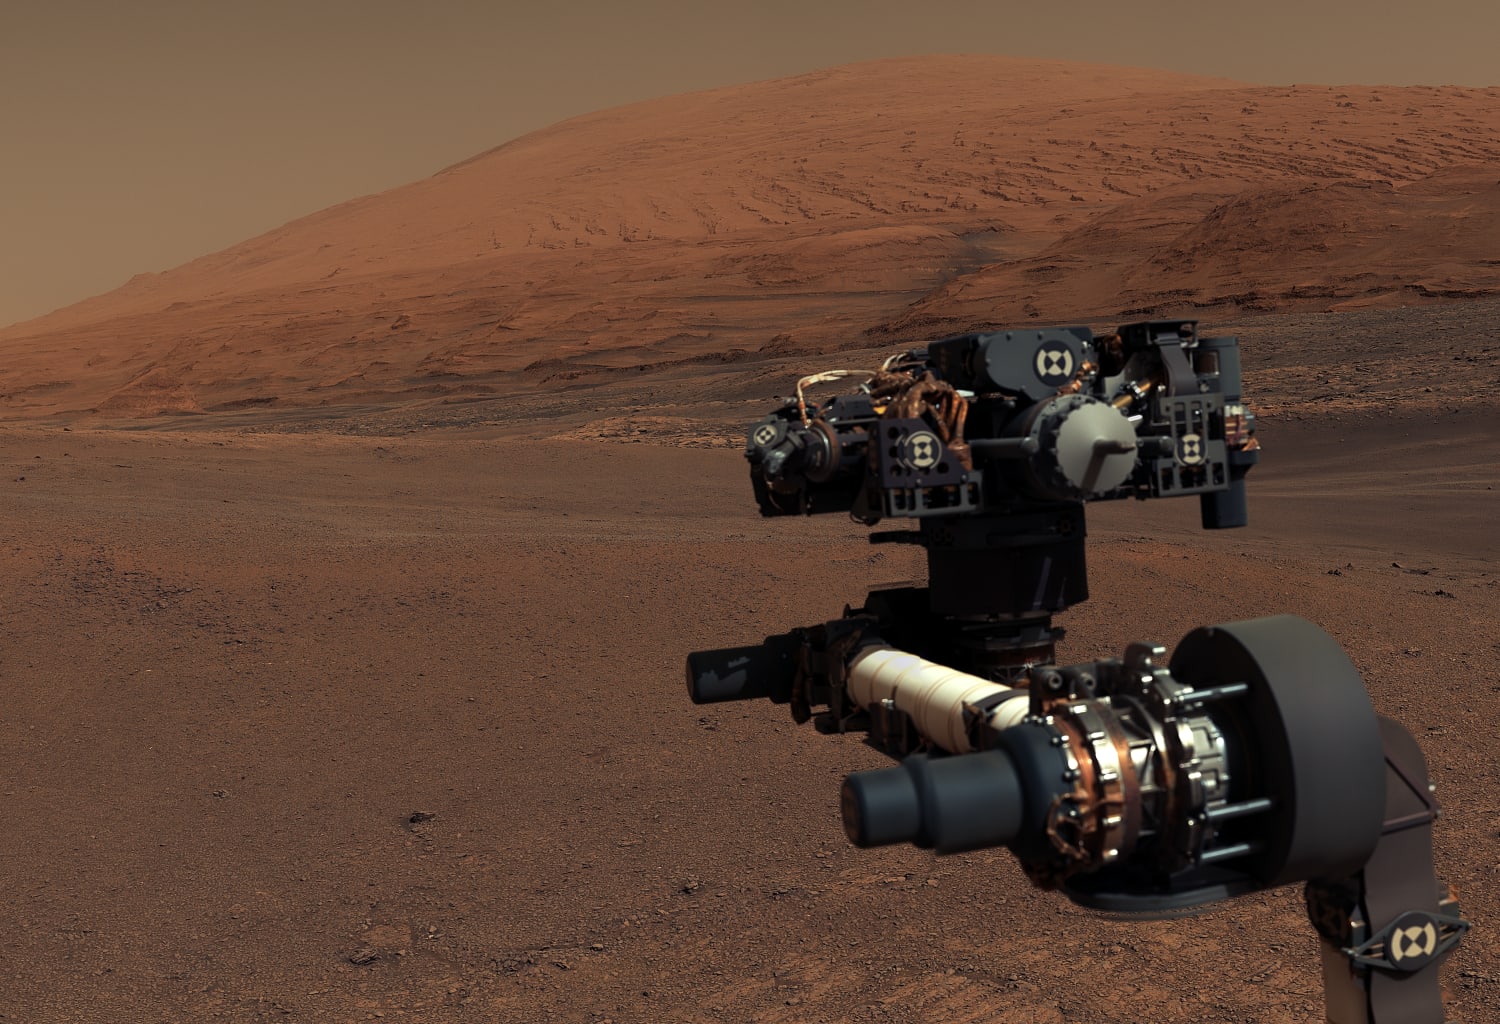 Curiosity looking towards the summit of Mount Sharp on Mars